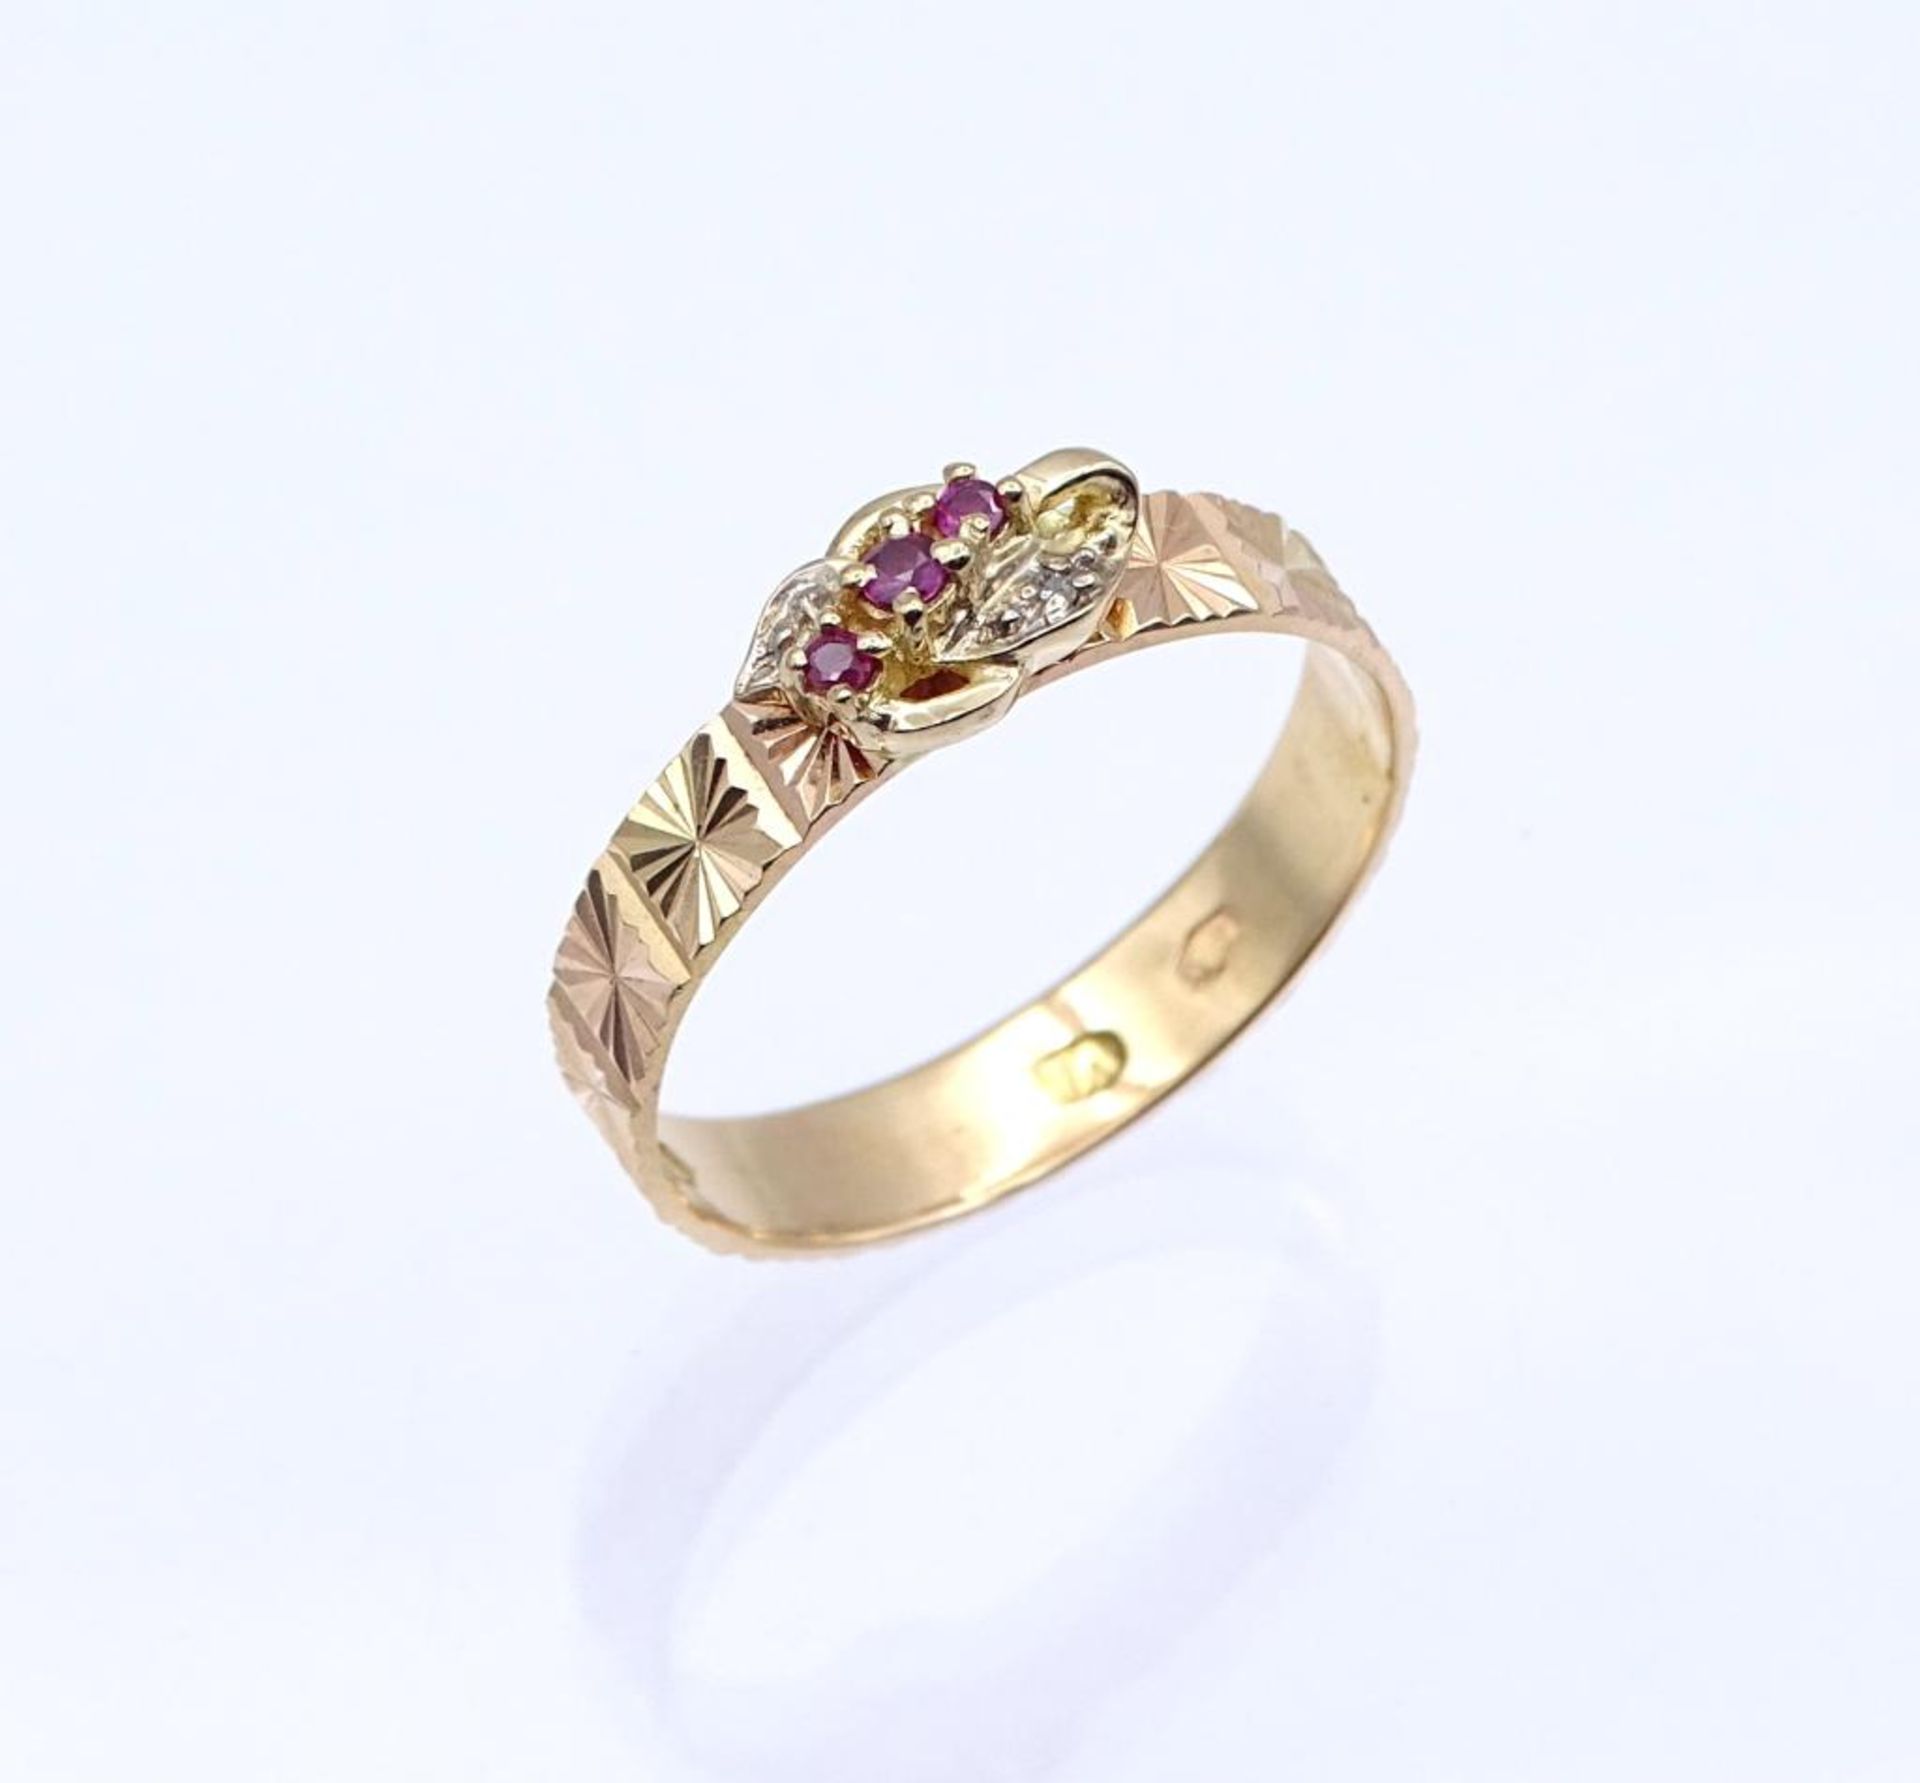 916er Rotgold Ring mit drei Rubine und ein Diamantsplitter,arabisch gestempelt, 3,2gr., RG 63- - -